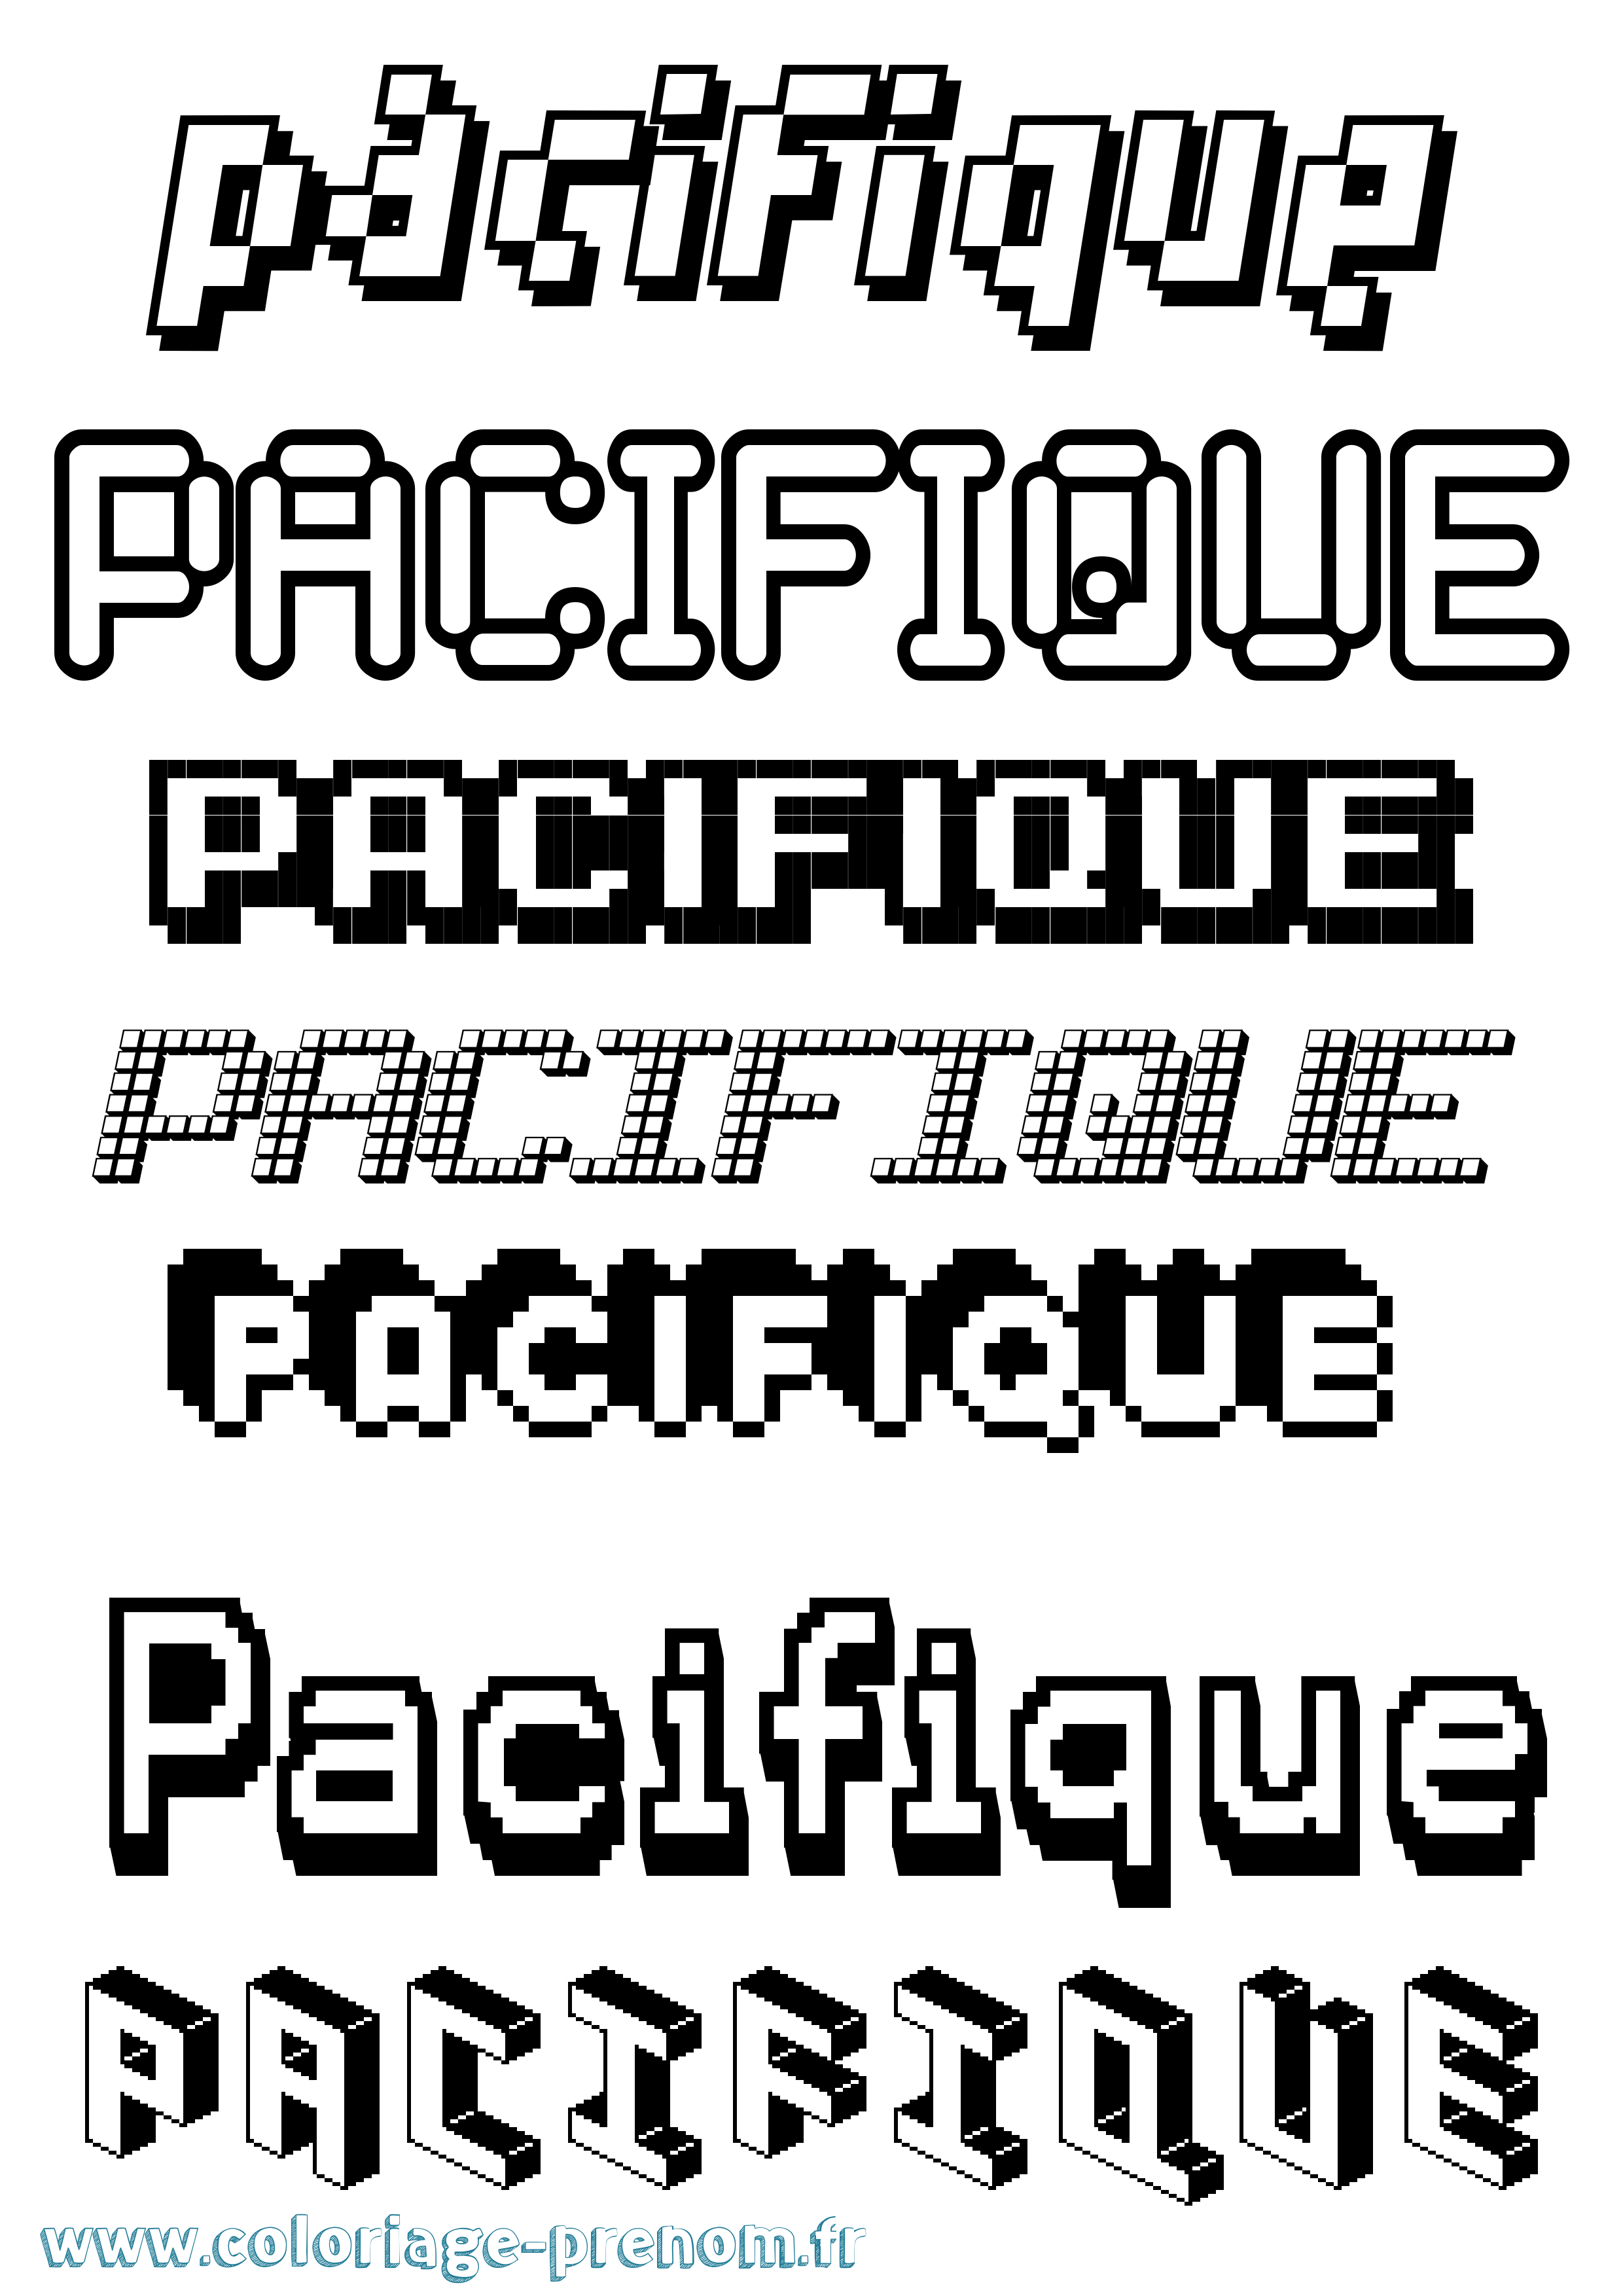 Coloriage prénom Pacifique Pixel